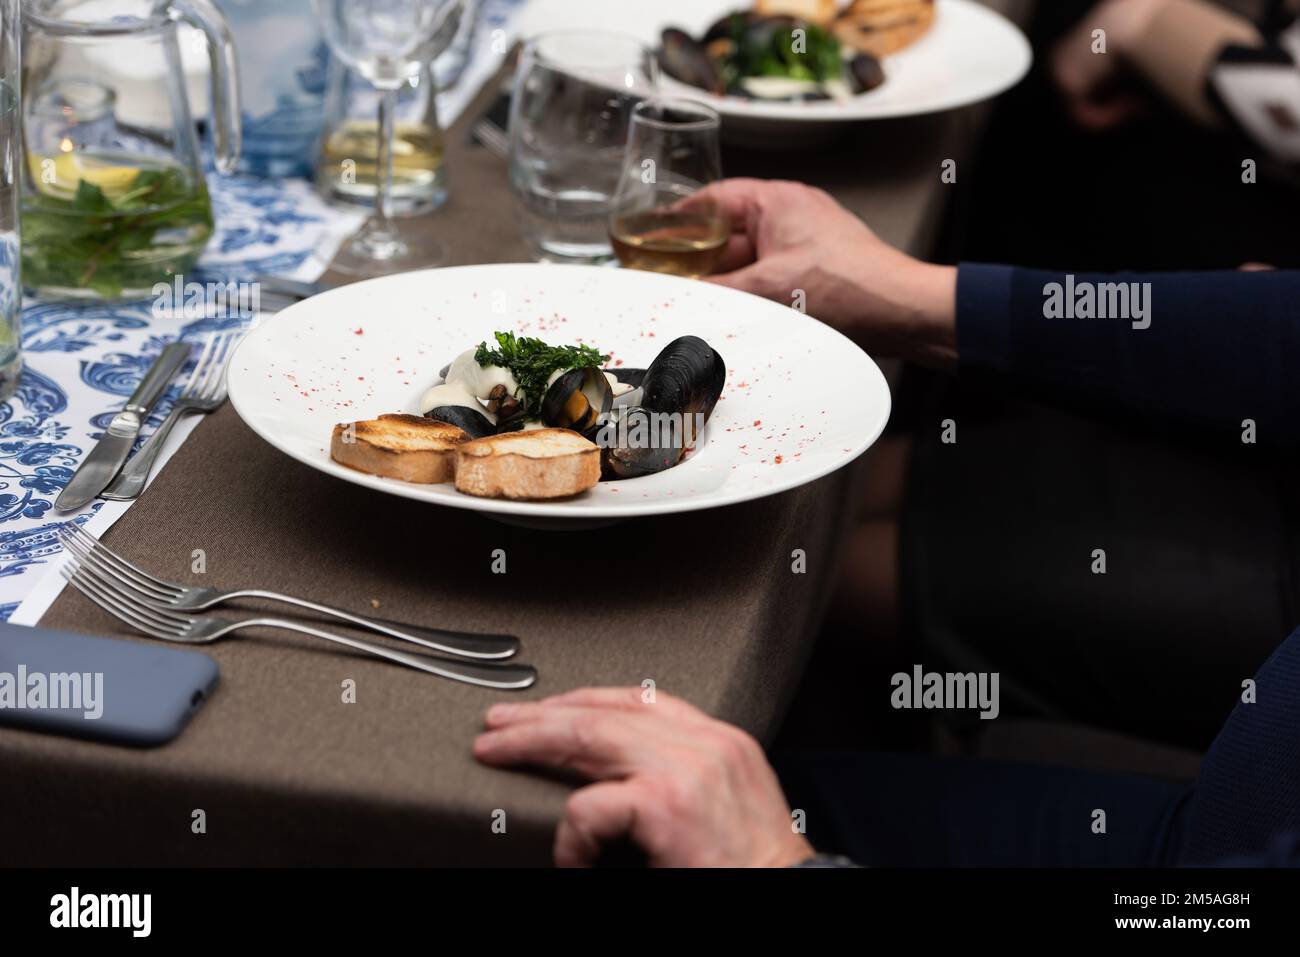 homme qui va manger des moules dans une sauce au vin blanc et des toasts de pain blanc dans un restaurant Banque D'Images